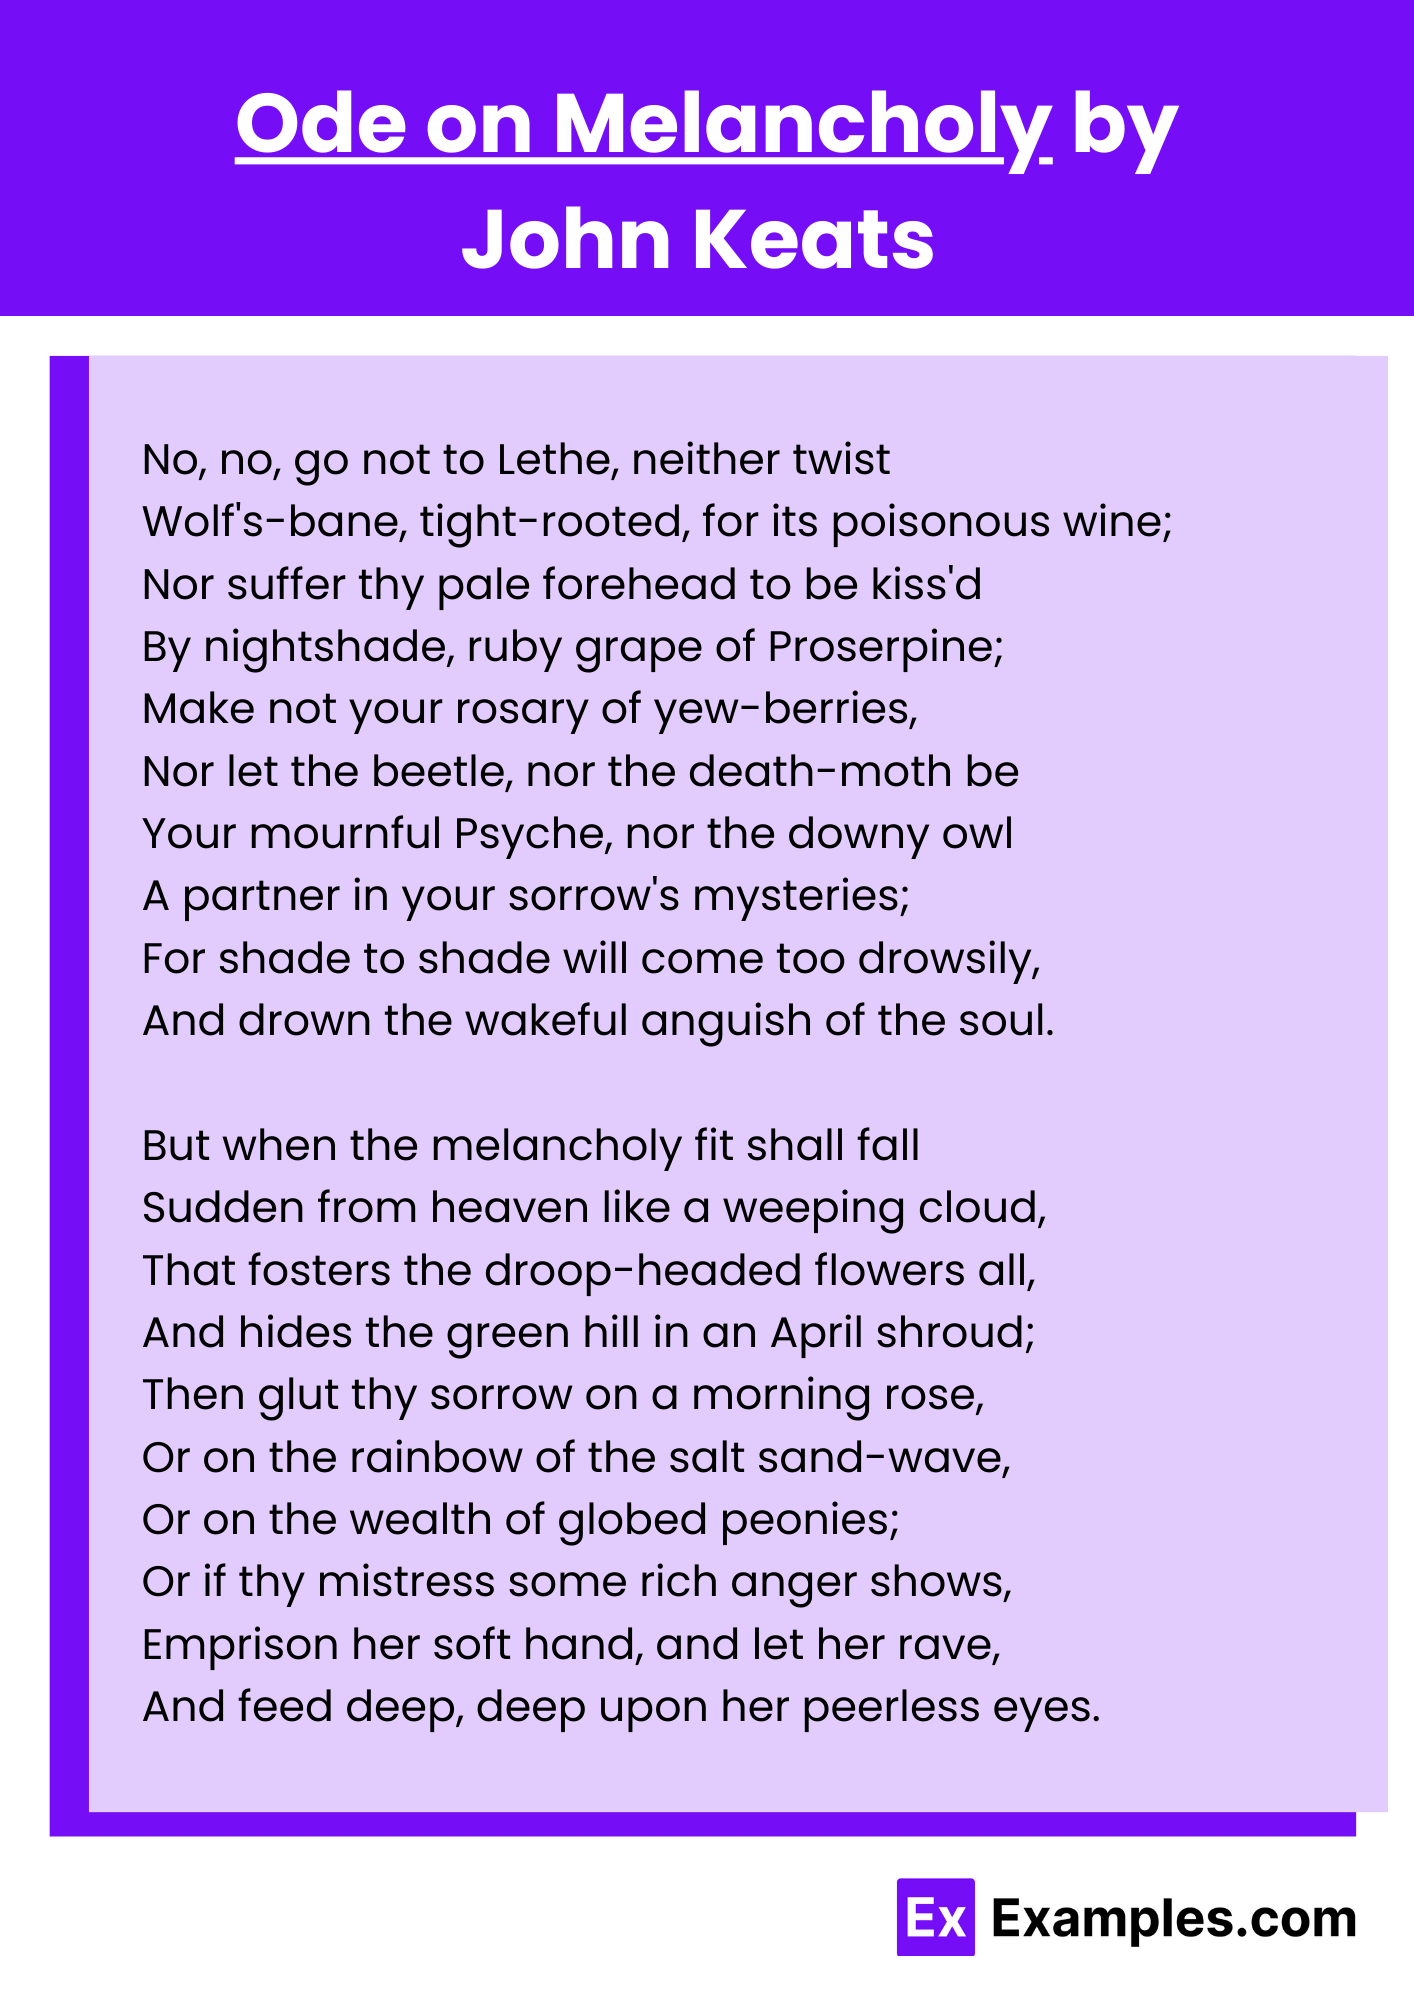 Ode on Melancholy by John Keats